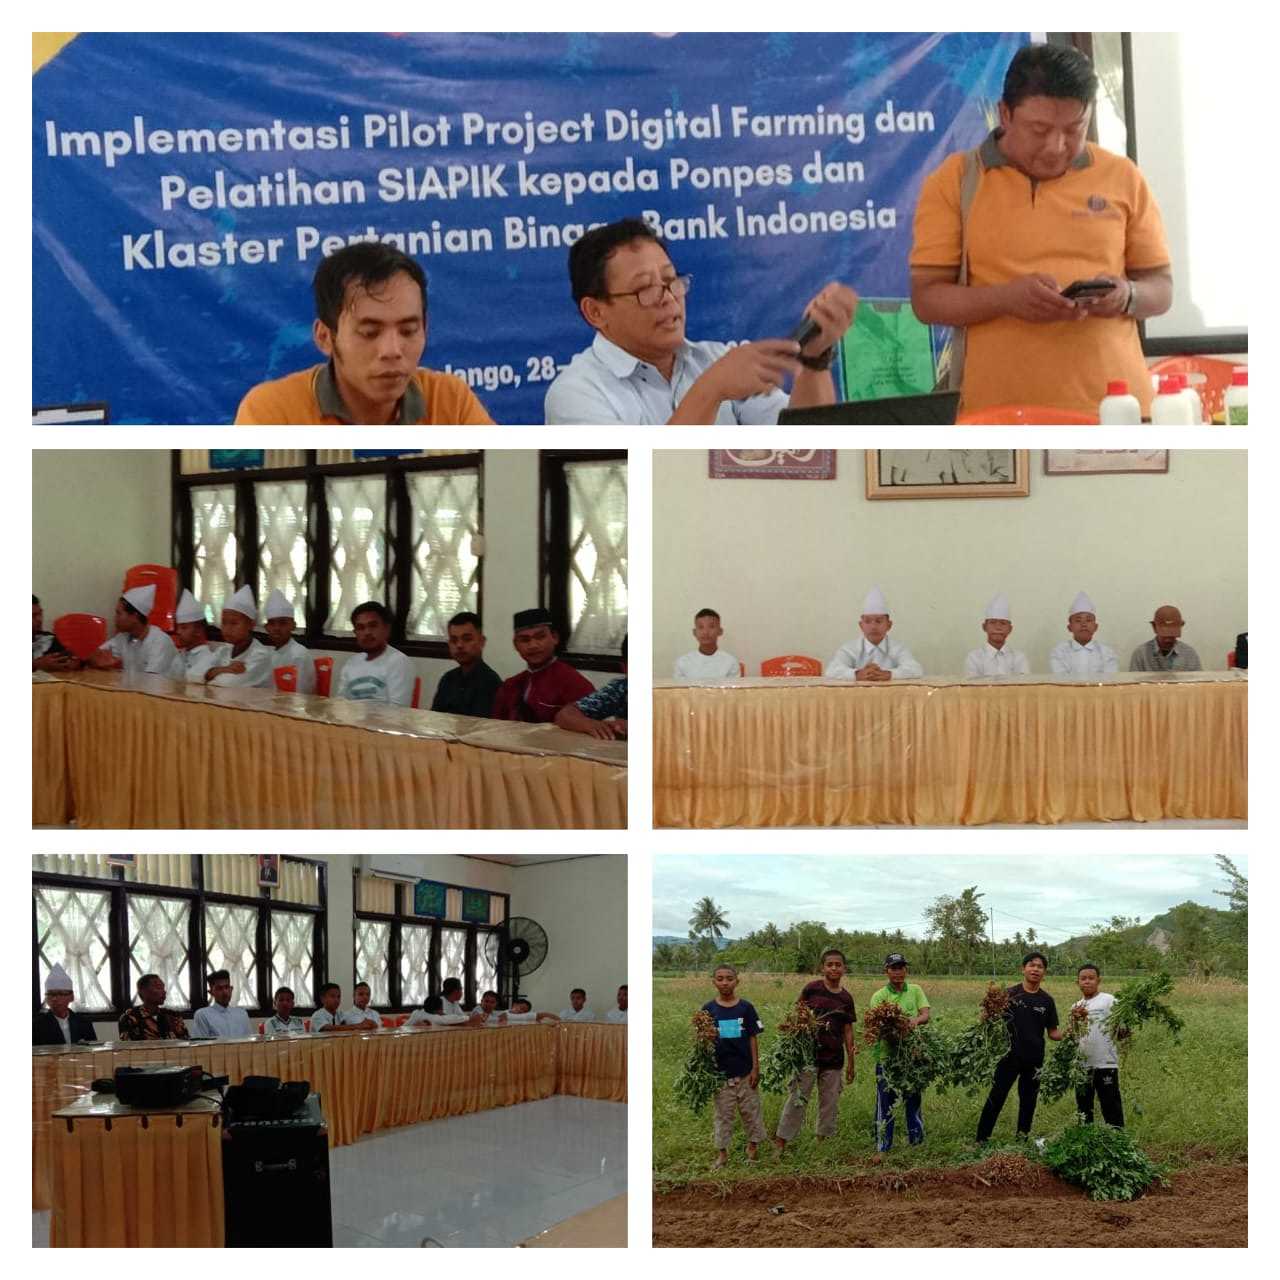 Implementasi Digital Farming Klaster Pertanian Binaan BI di Pesantren HUBULO